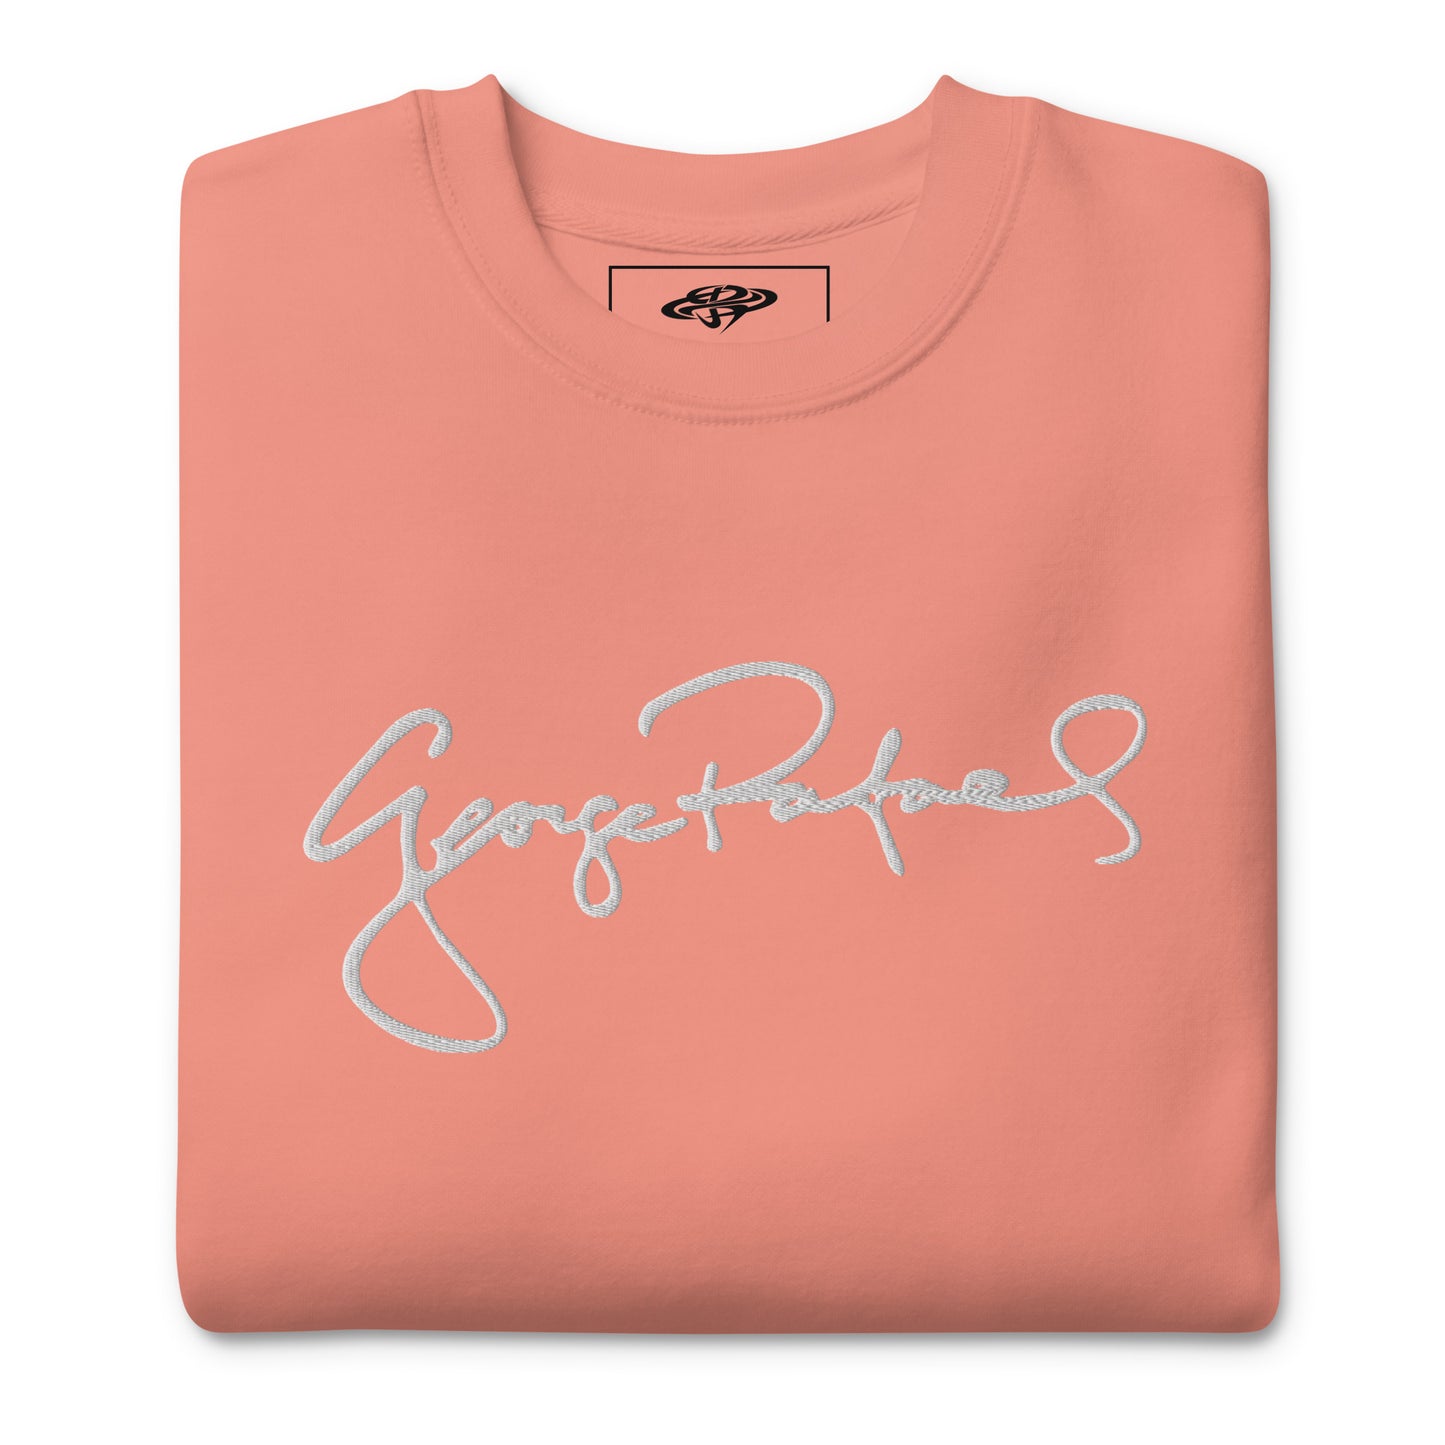 George Rafael Signature Unisex Premium Sweatshirt